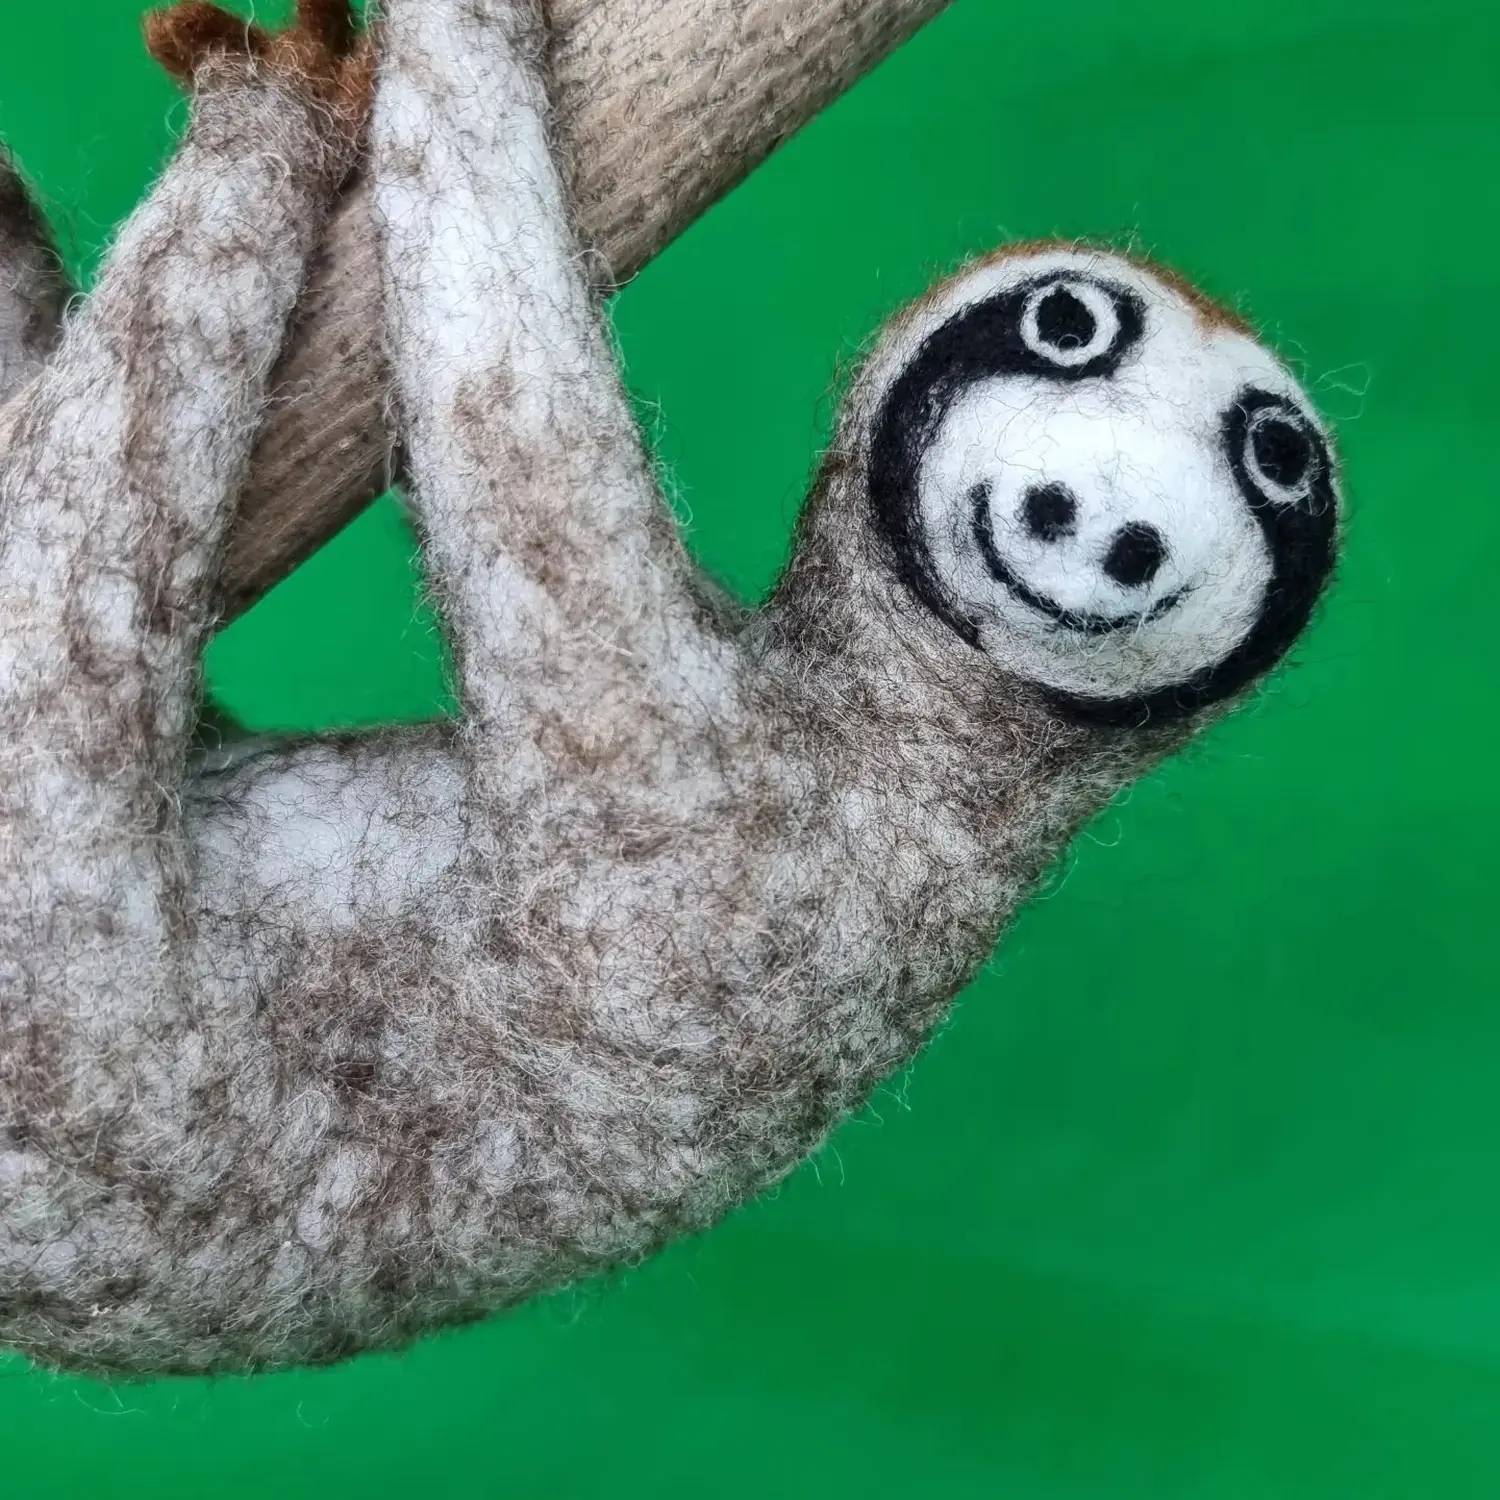 DUENDE - Filzkunst, Faultier am Baum hängendes Spielzeug